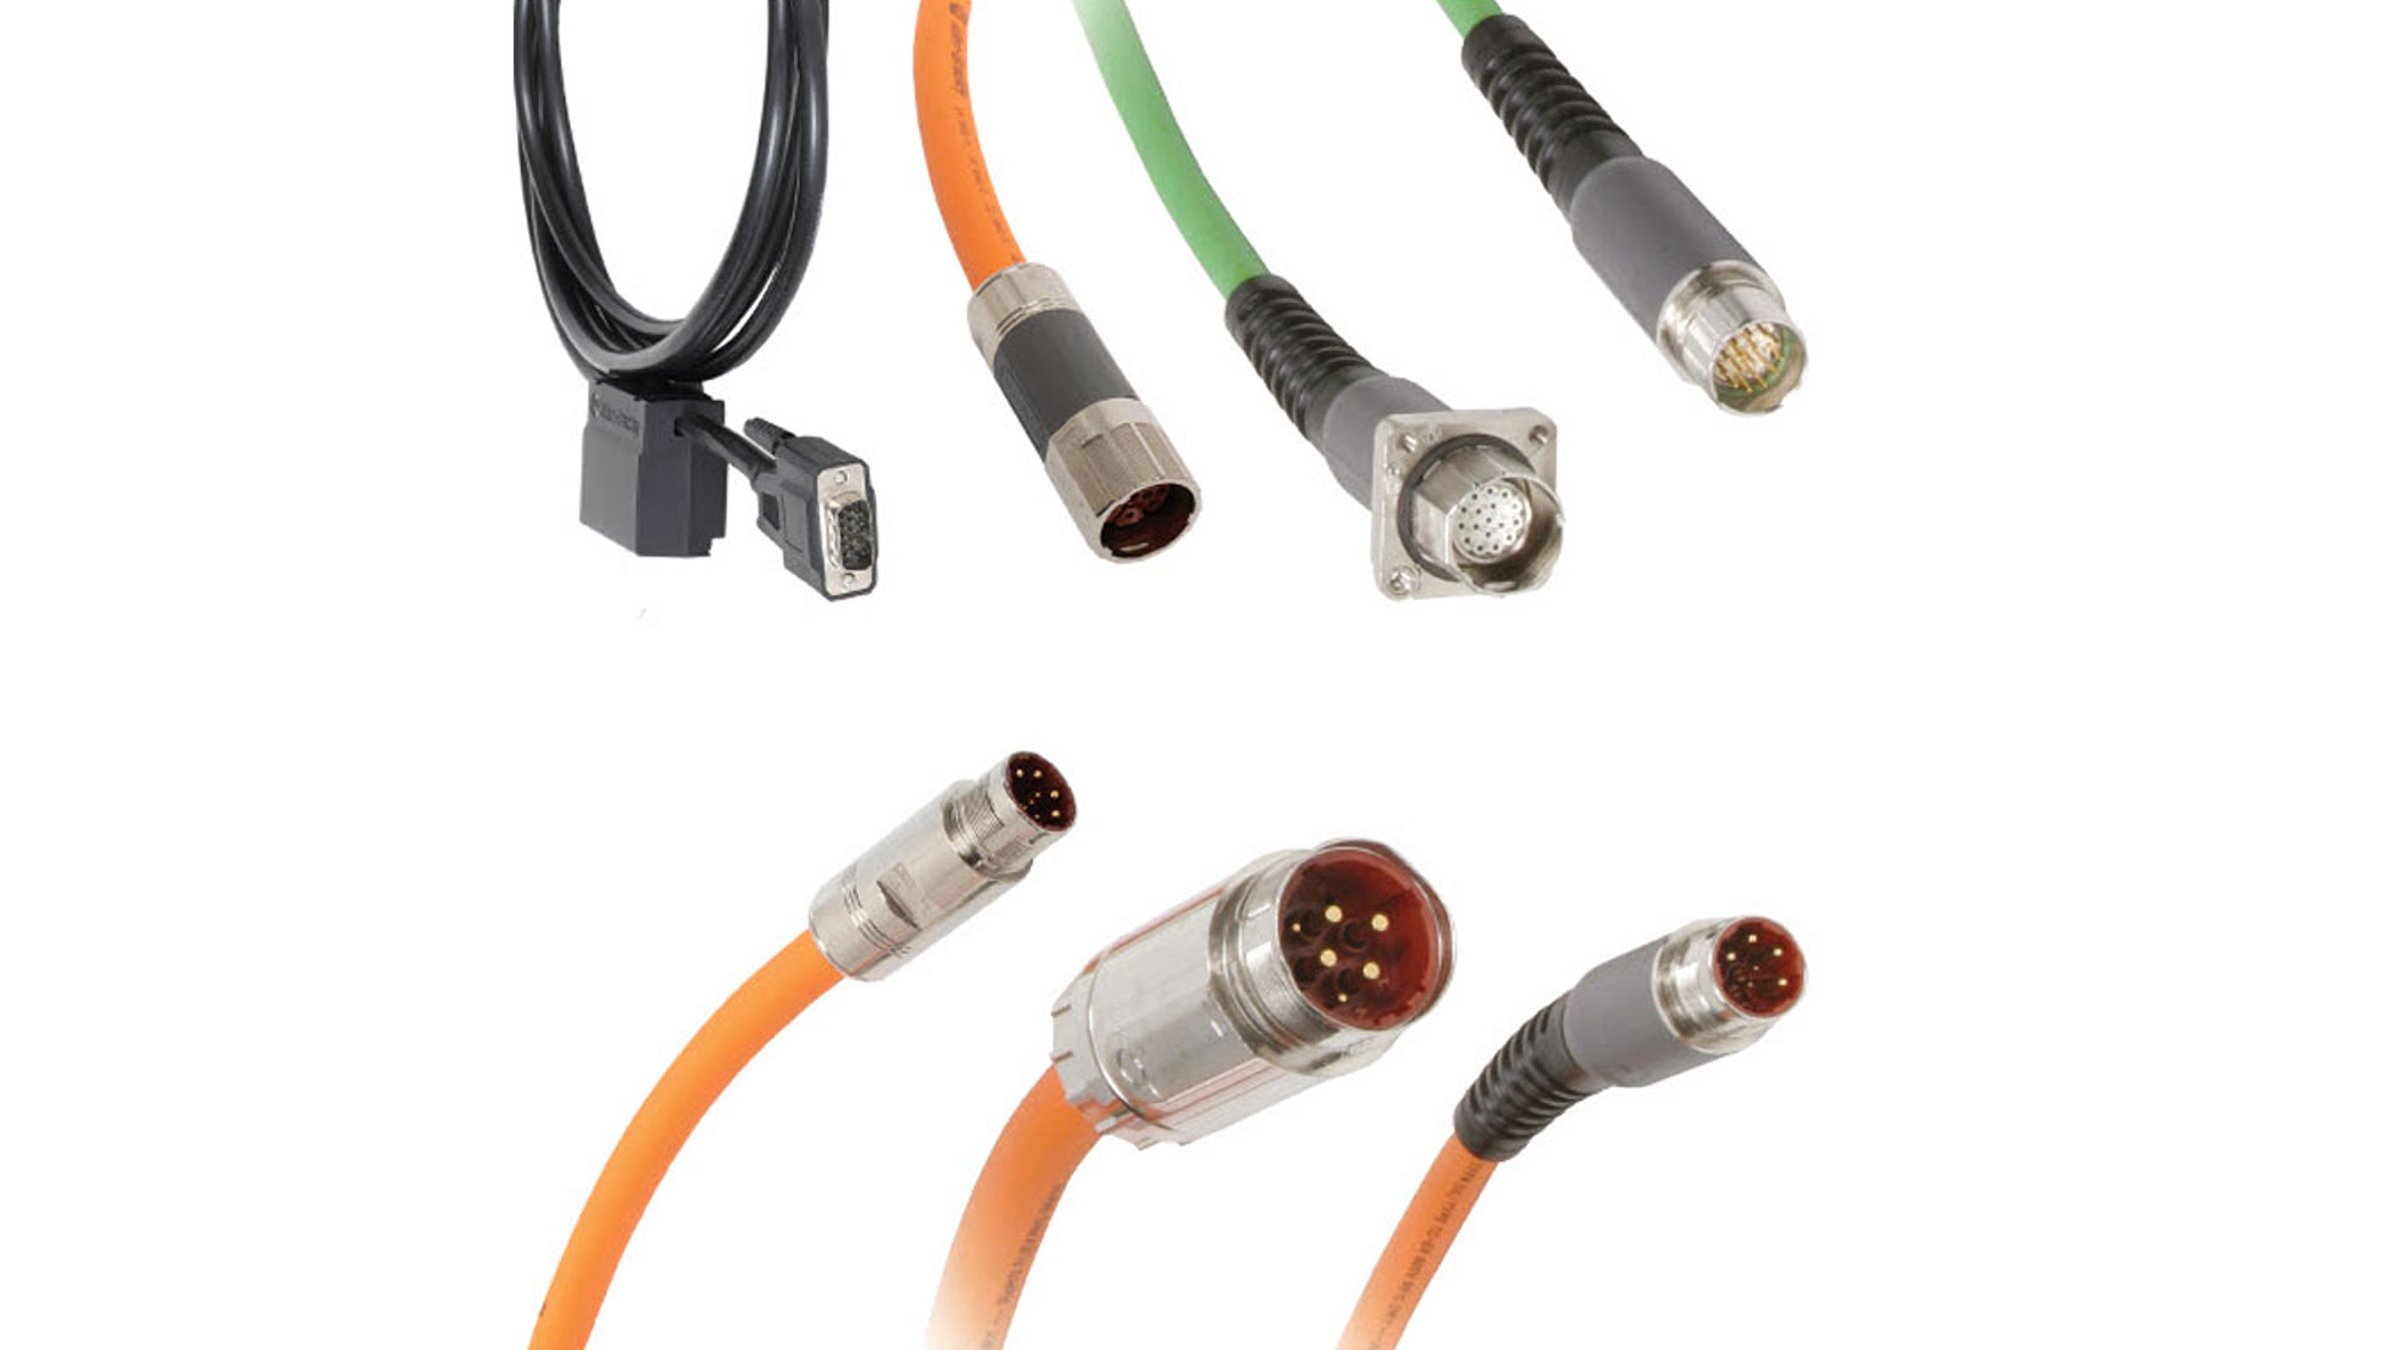 Die Allen-Bradley-Kinetix®-Kabel der Serie 2090 stellen eine komplette Produktreihe mit Standardkabeln und Kabeln für ständige Biegebeanspruchung dar. Alle Kabel sind mit SpeedTEC®-DIN-Anschlüssen für eine schnelle Verbindung durch Vierteldrehung ausgestattet.